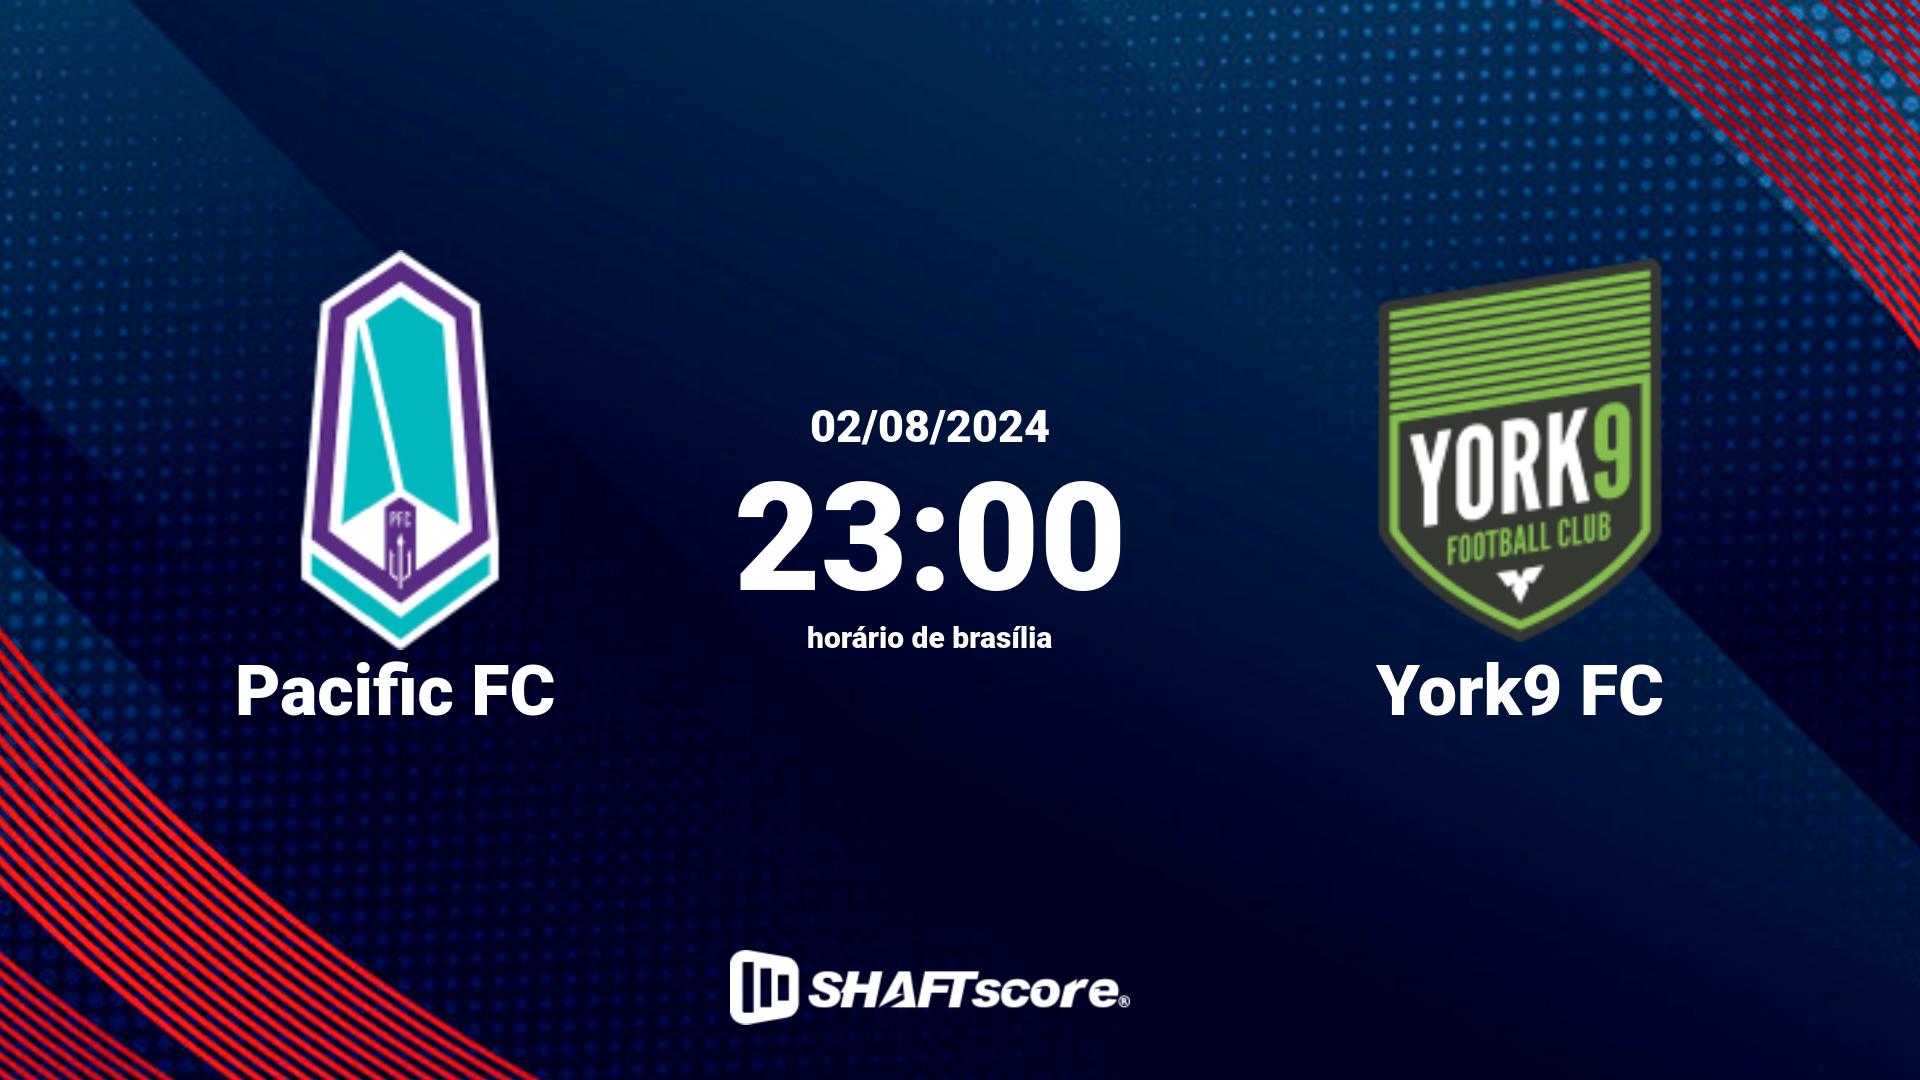 Estatísticas do jogo Pacific FC vs York9 FC 02.08 23:00